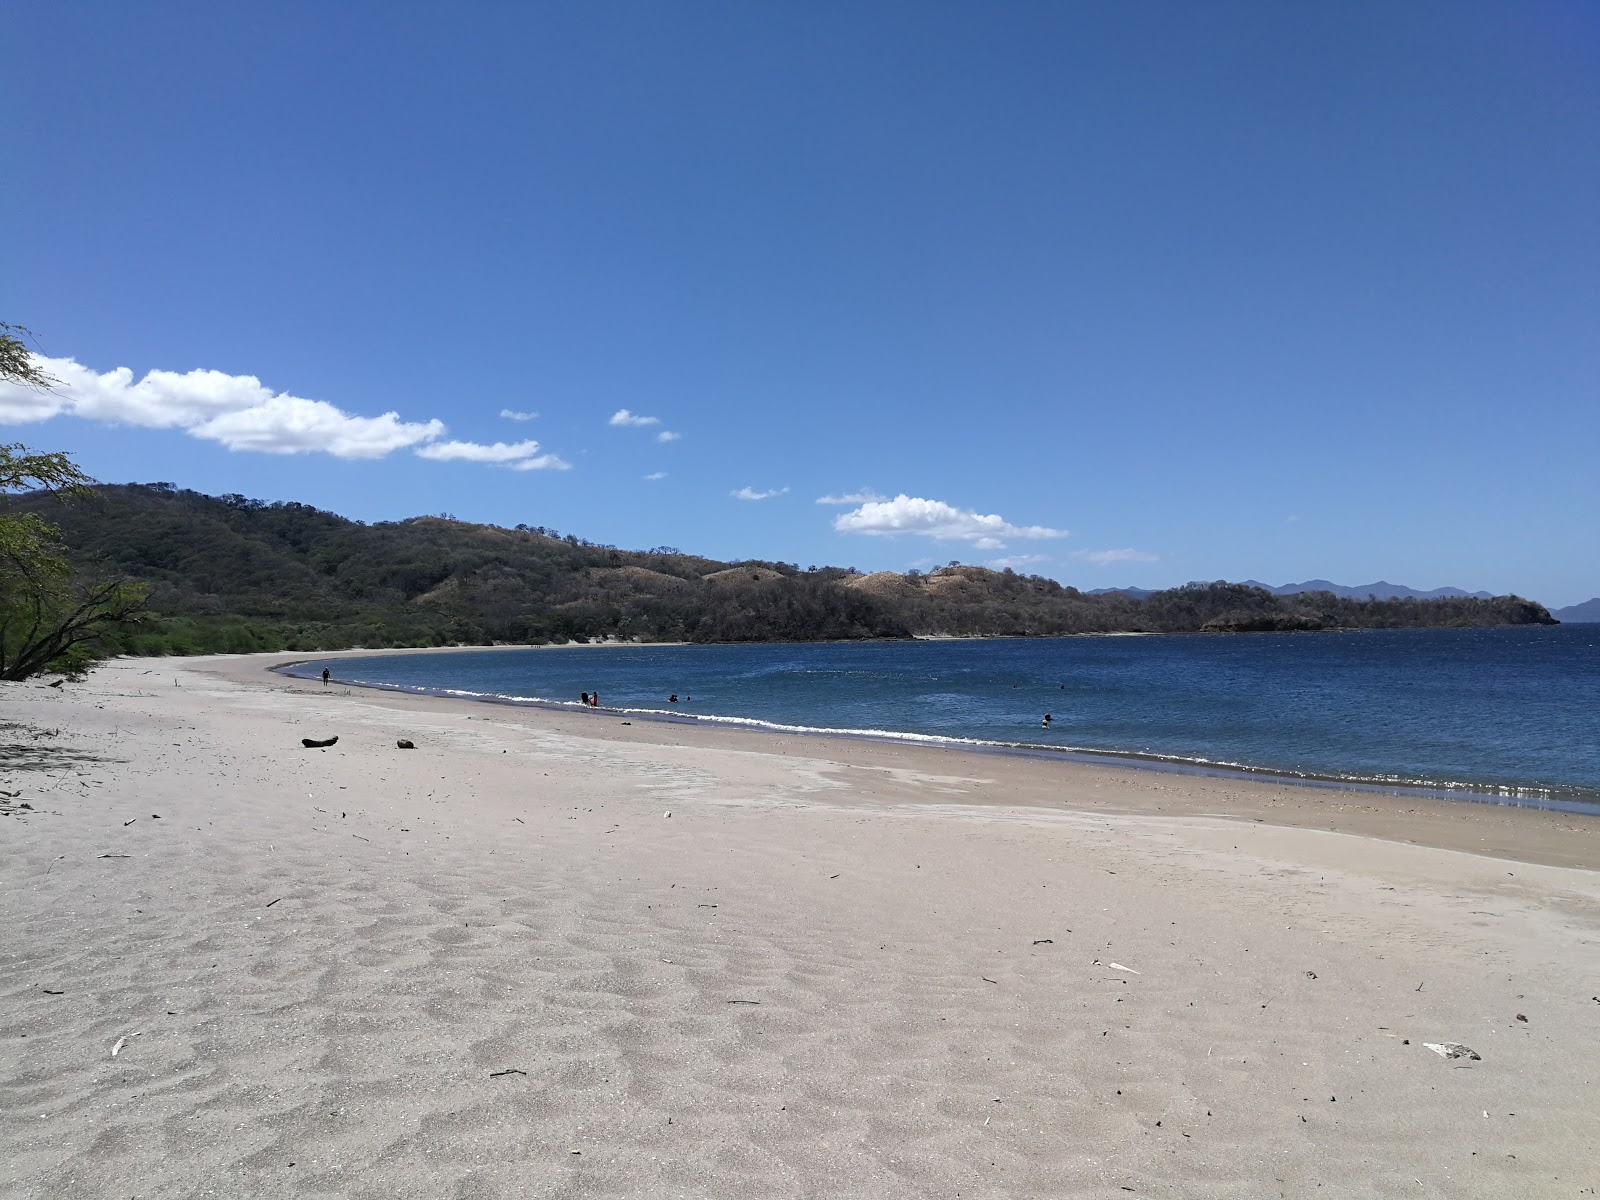 Zdjęcie Junquillal beach z powierzchnią jasny piasek